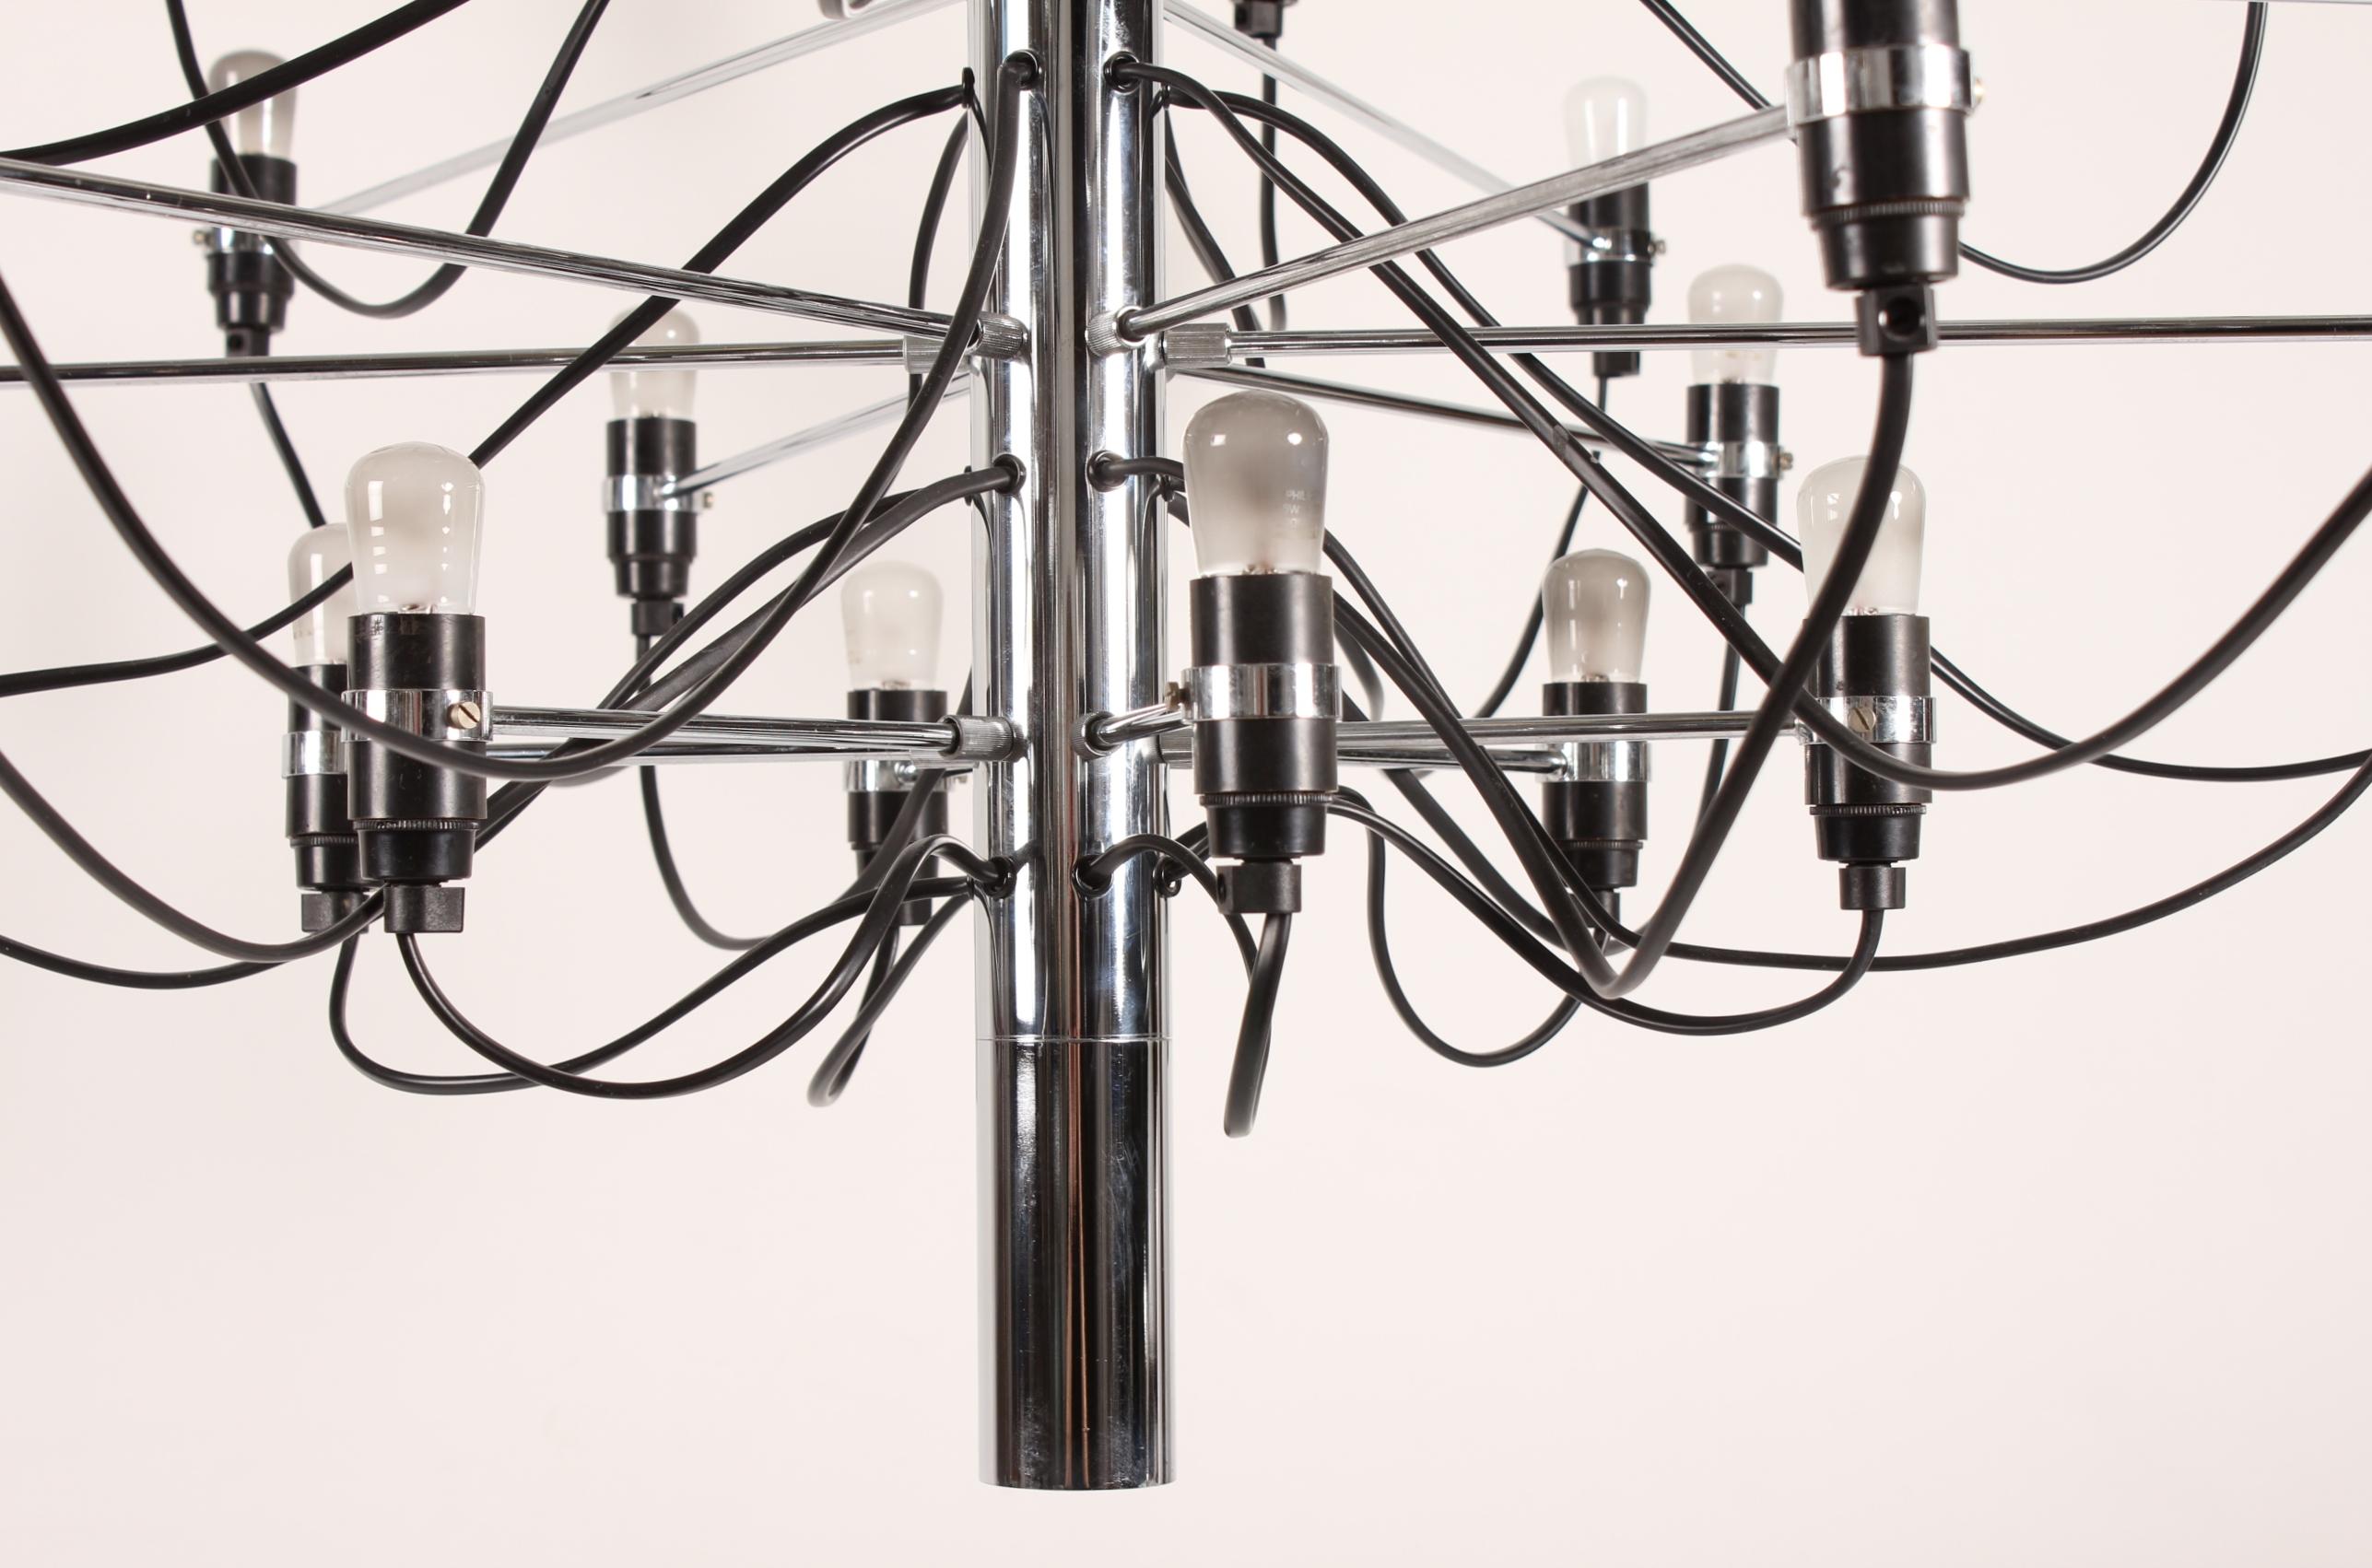 Grand lustre de Gino Sarfatti (1912-1984) modèle 2097 avec 30 bras et ampoules conçu en 1958.
Elle est en métal chromé et fabriquée par Flos dans les années 1980.

Ce lustre, à l'expression légère et simple, s'intégrera aussi bien dans un intérieur